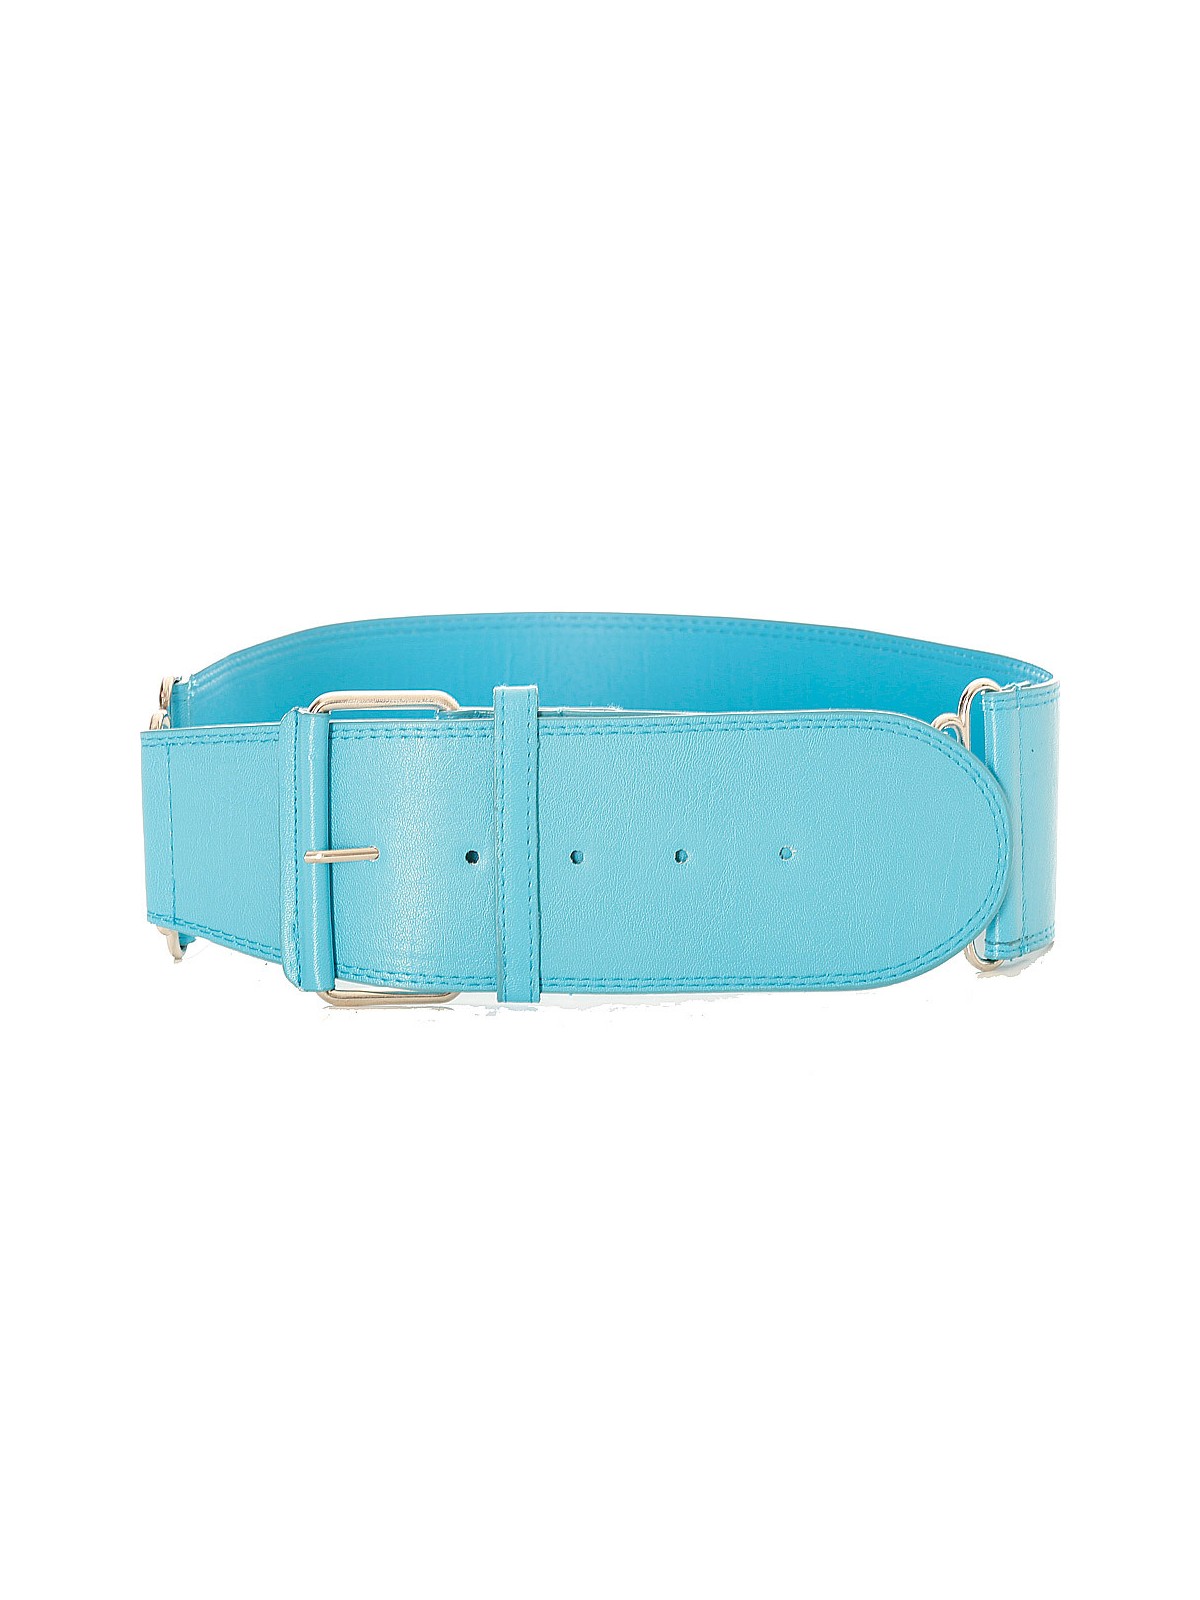 Grosse ceinture turquoise très tendance. SG-0418 - 2